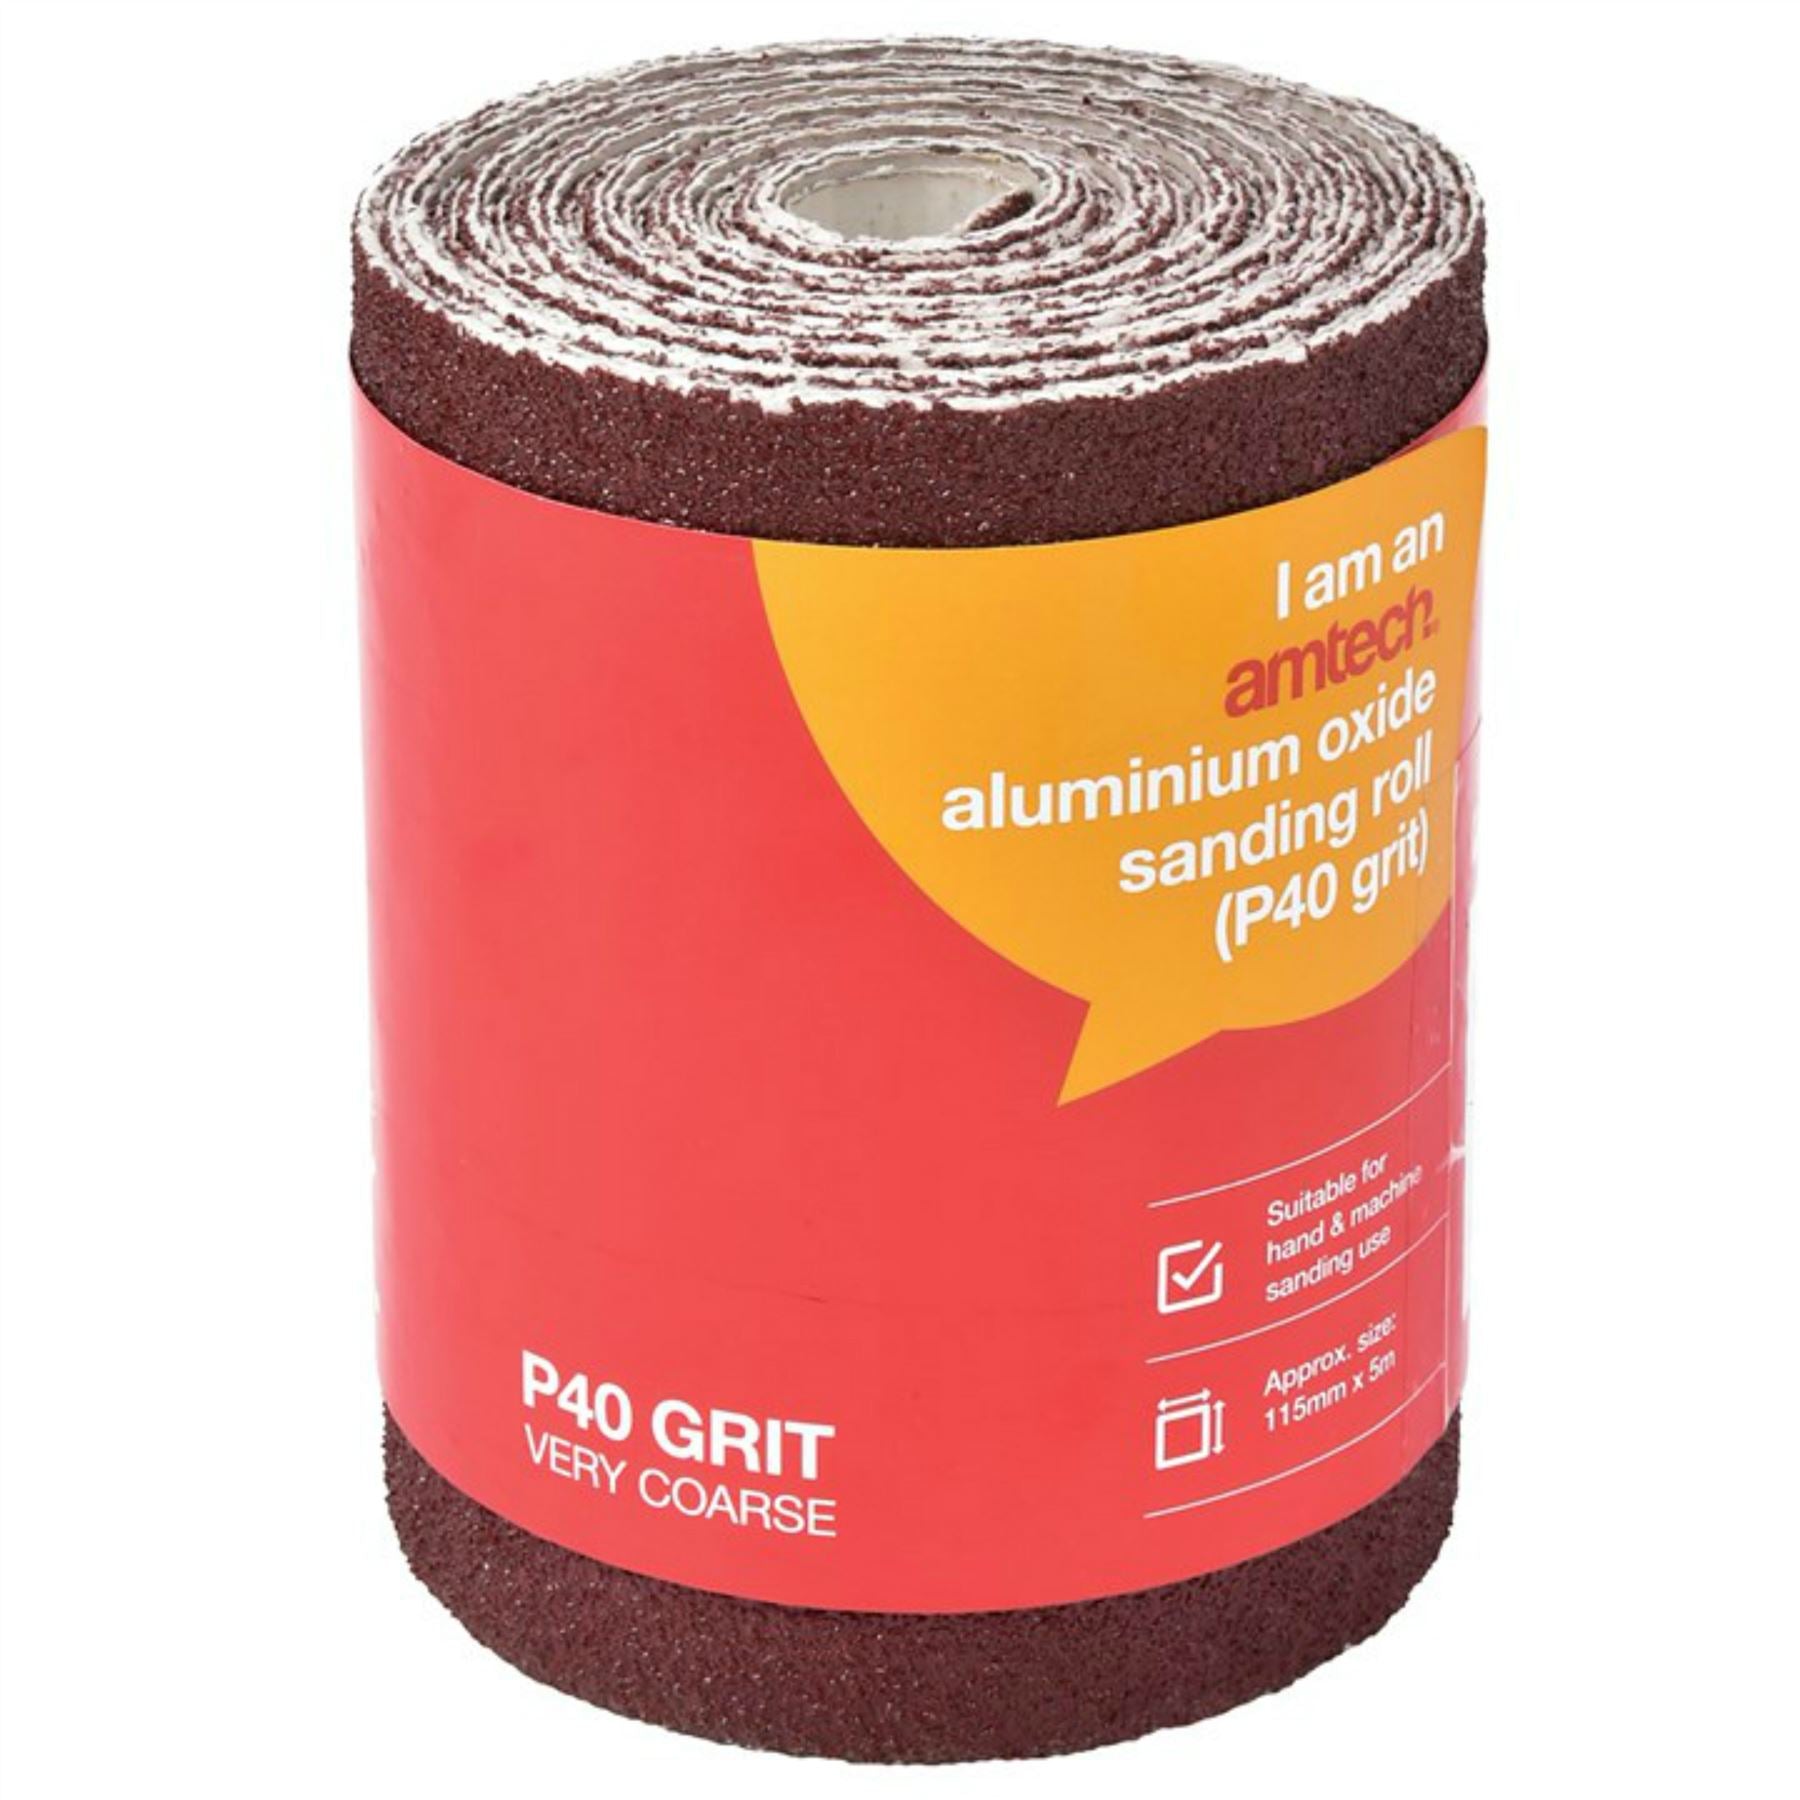 Amtech 5m Red Aluminium Oxide Sanding Roll 40 60 80 Or 120 Grit Sandpaper